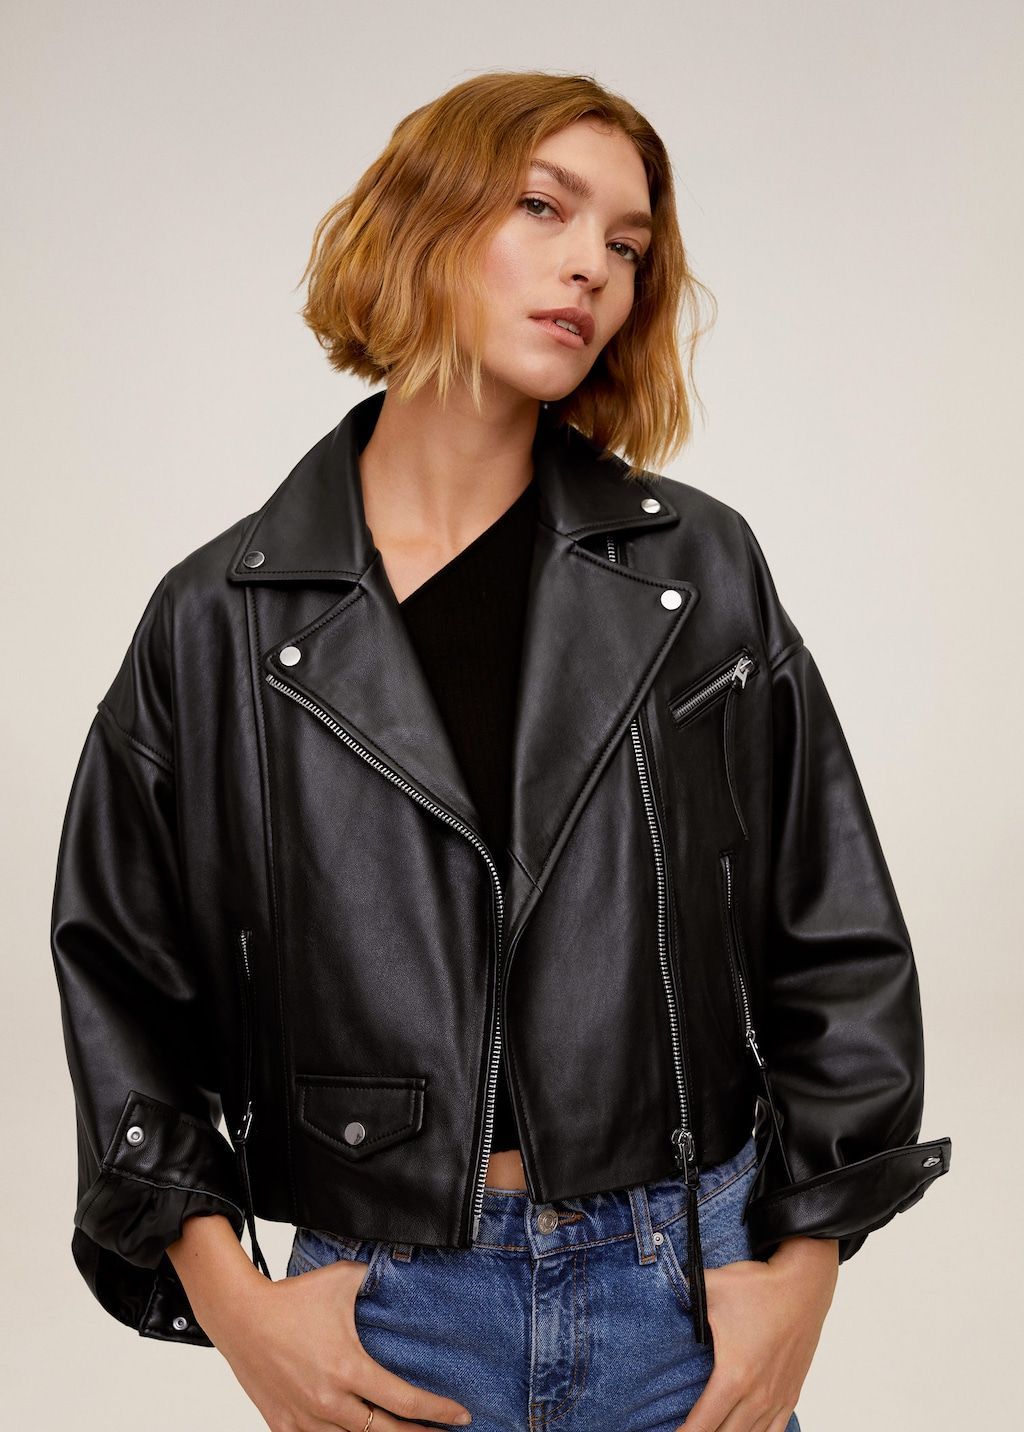 michael kors genuine leather jacket